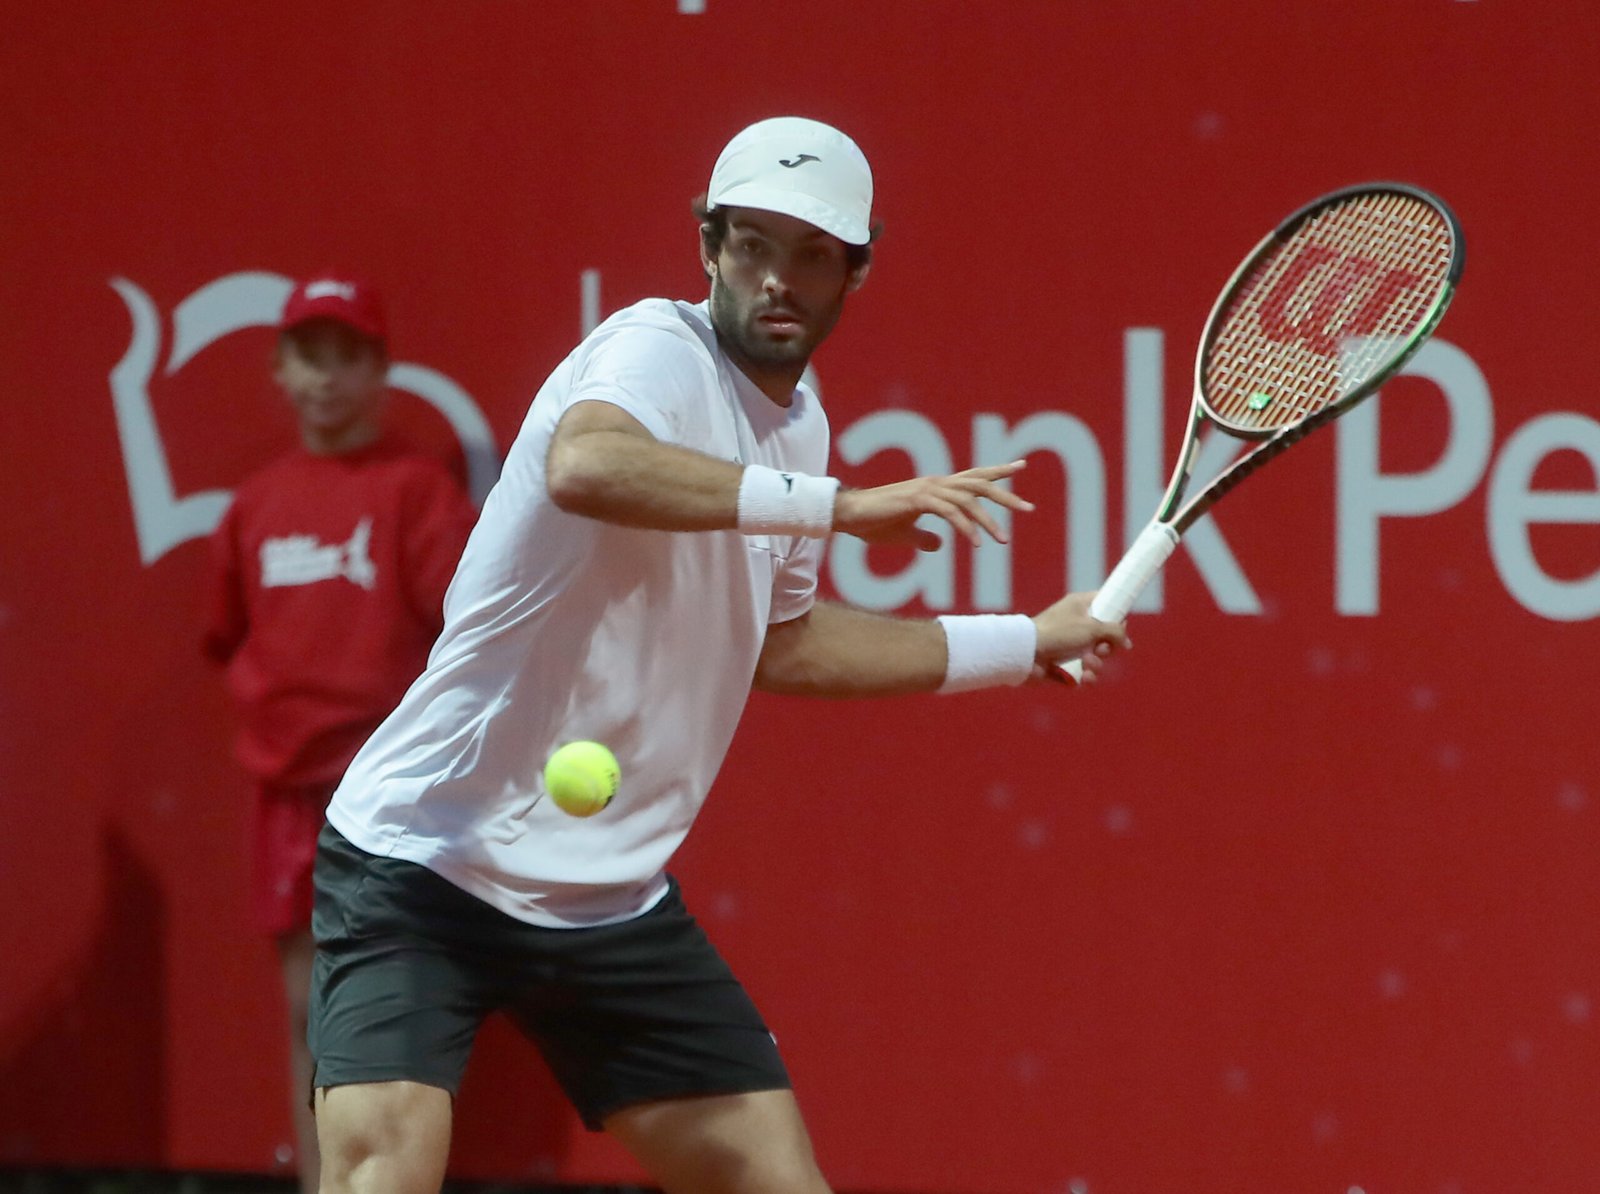 El argentino Facundo Díaz Acosta avanzó hoy a los octavos de final del Challenger de tenis de Numea, en Nueva Caledonia